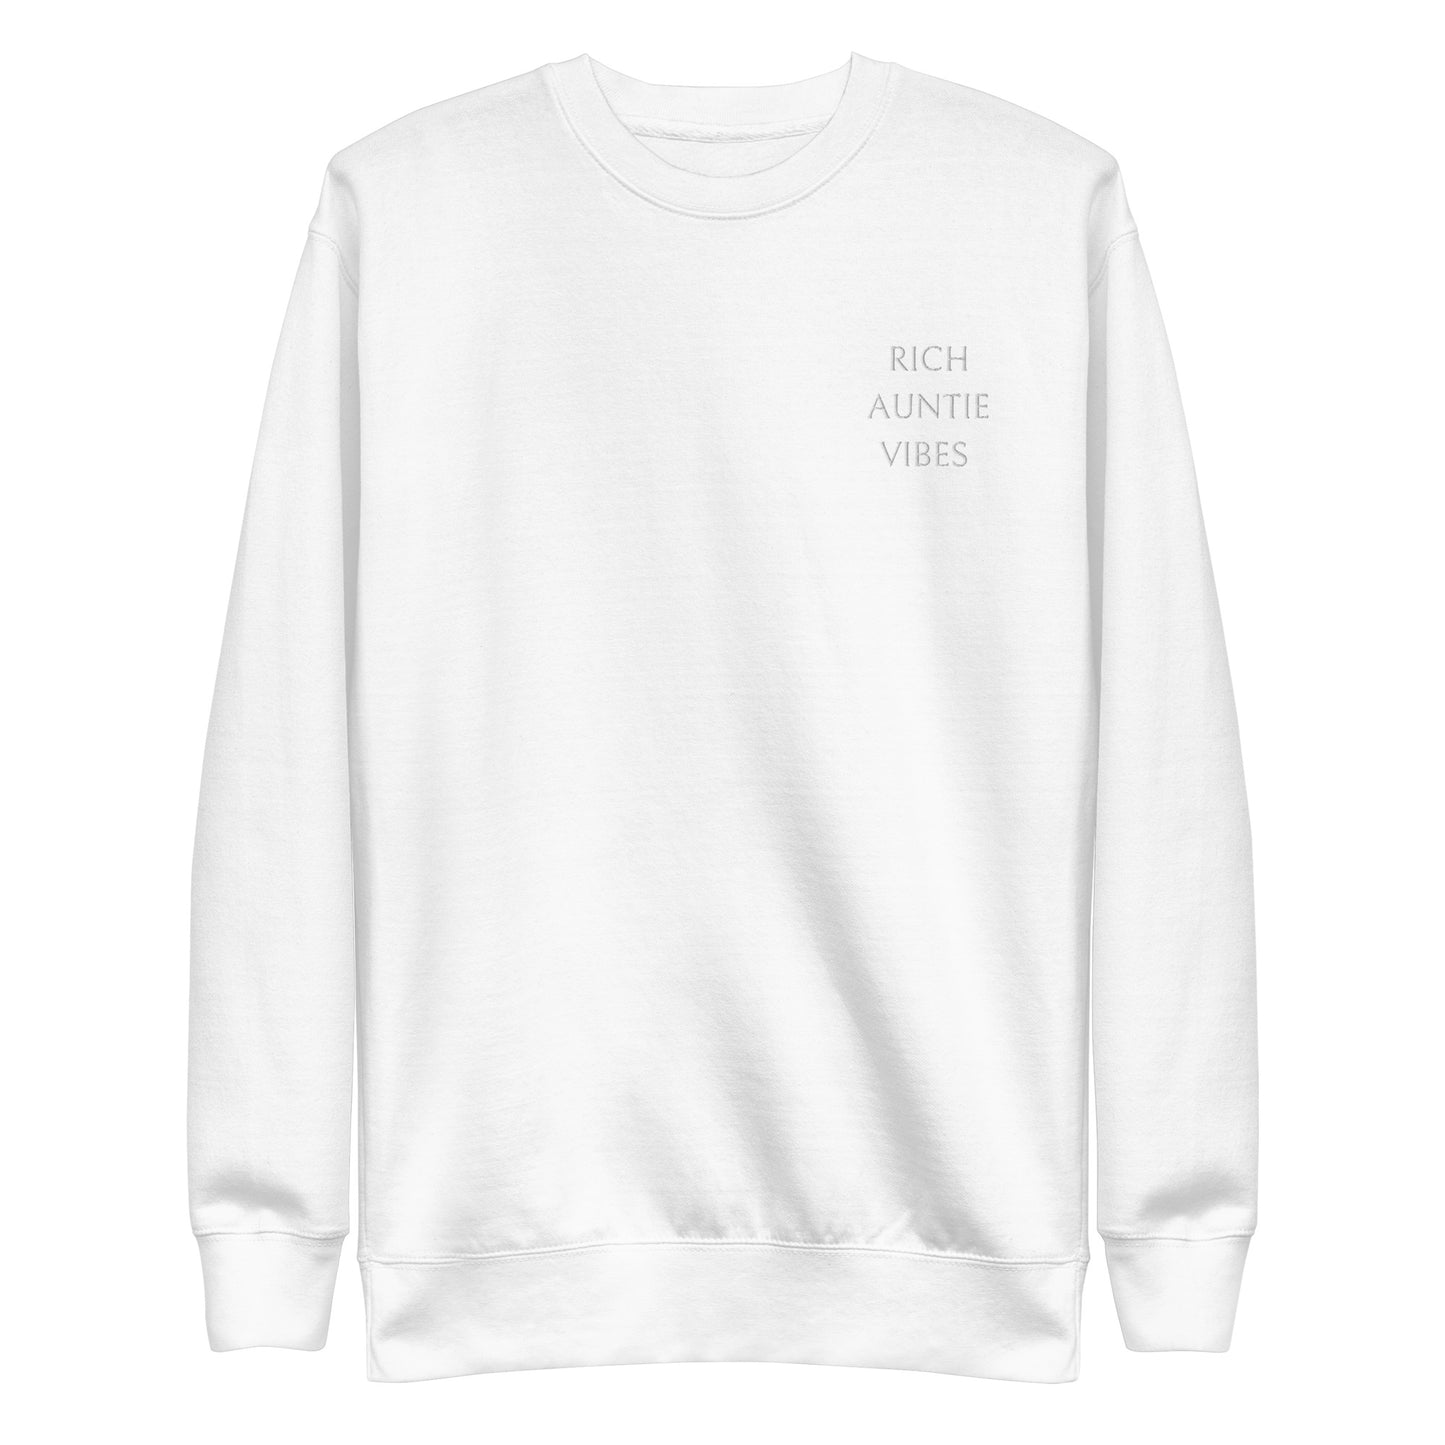 Rich Auntie Vibes Premium Sweatshirt